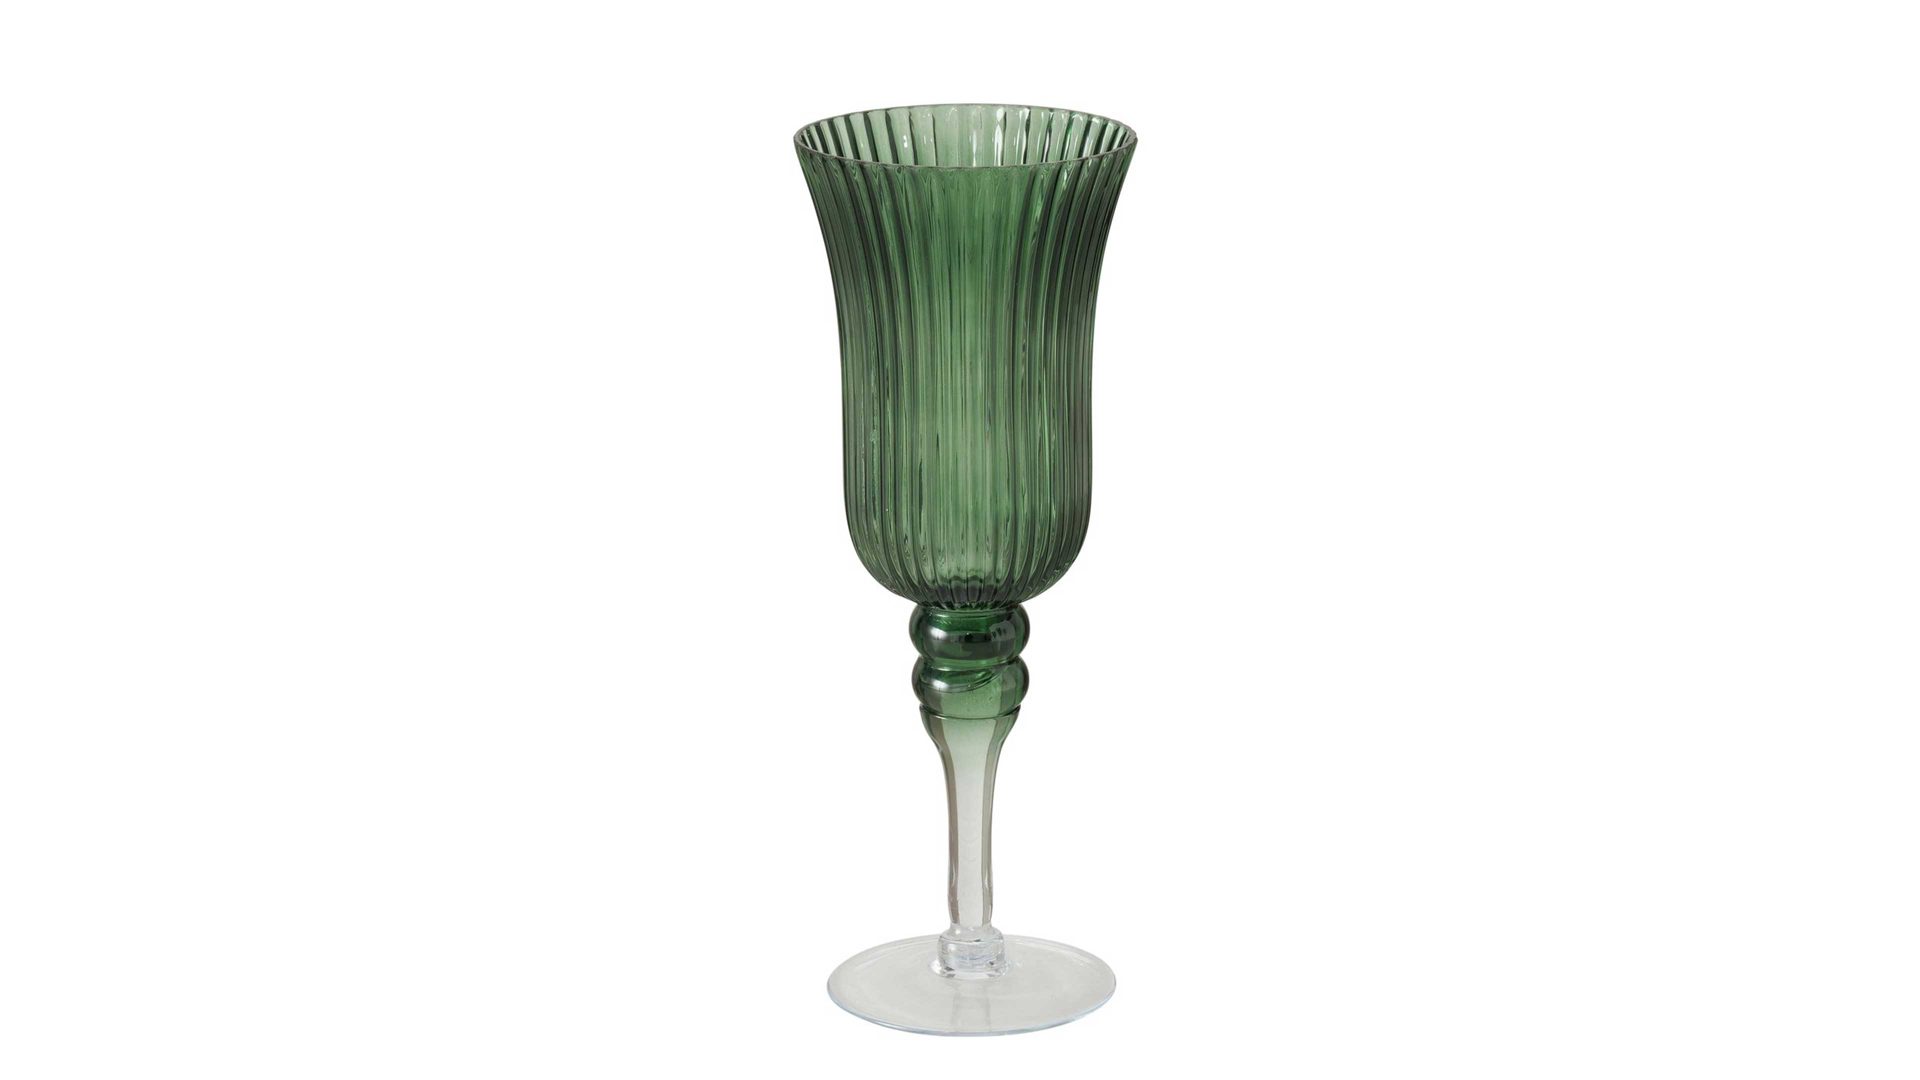 Windlicht Boltze aus Glas in Grün Teelichtglas Manou grünes Glas - Höhe ca. 40 cm